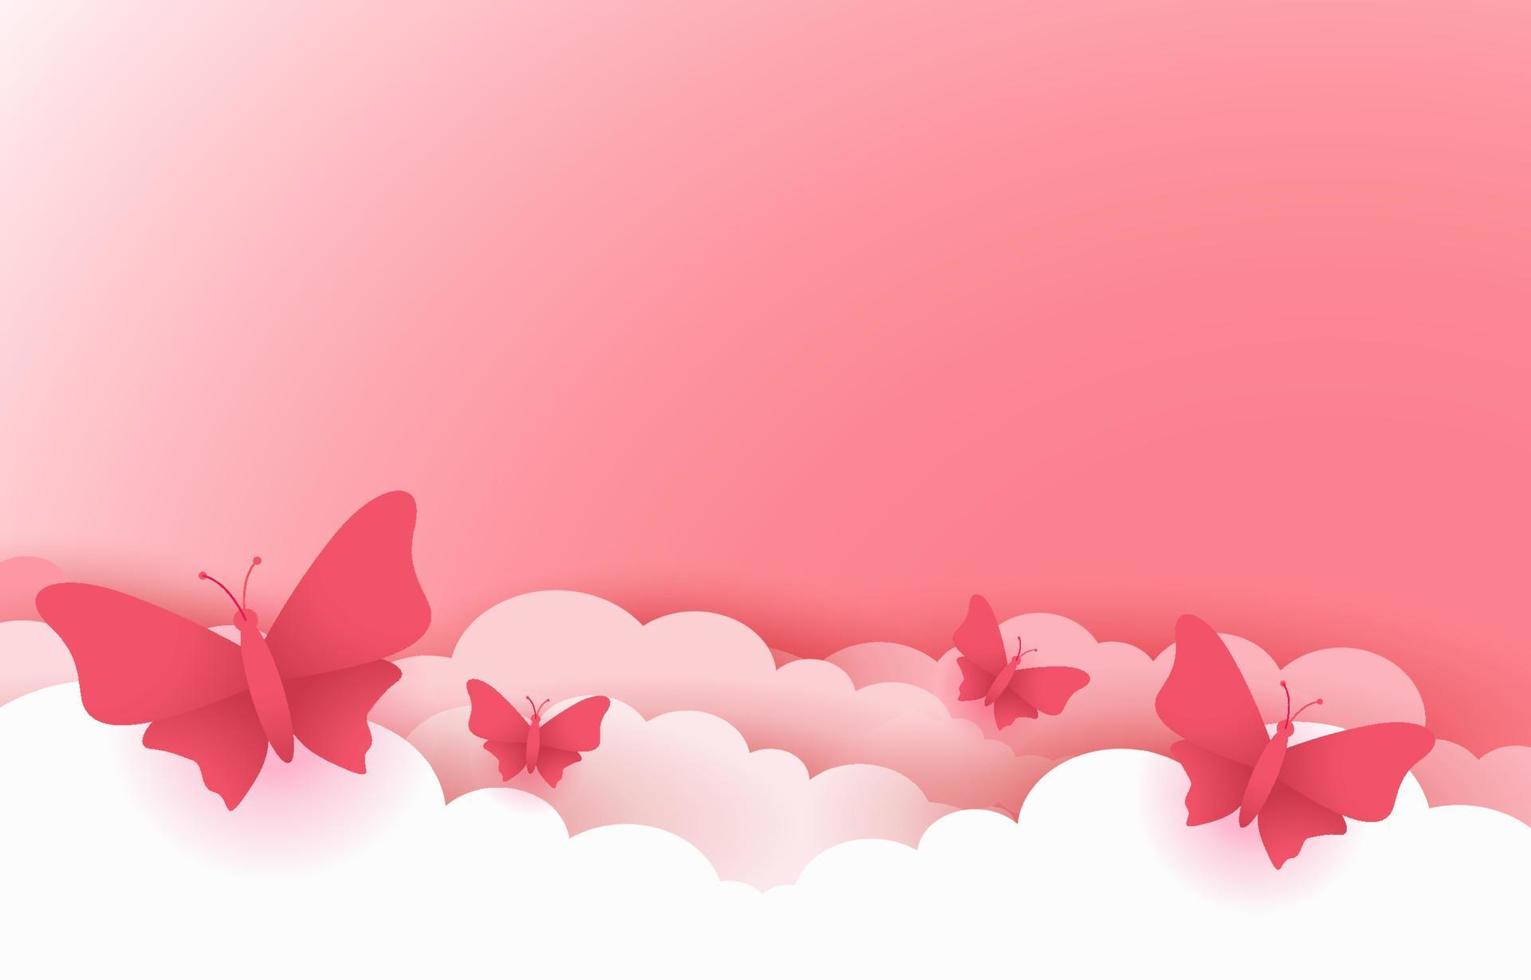 mooie roze achtergrond met wolken en vlinders vector